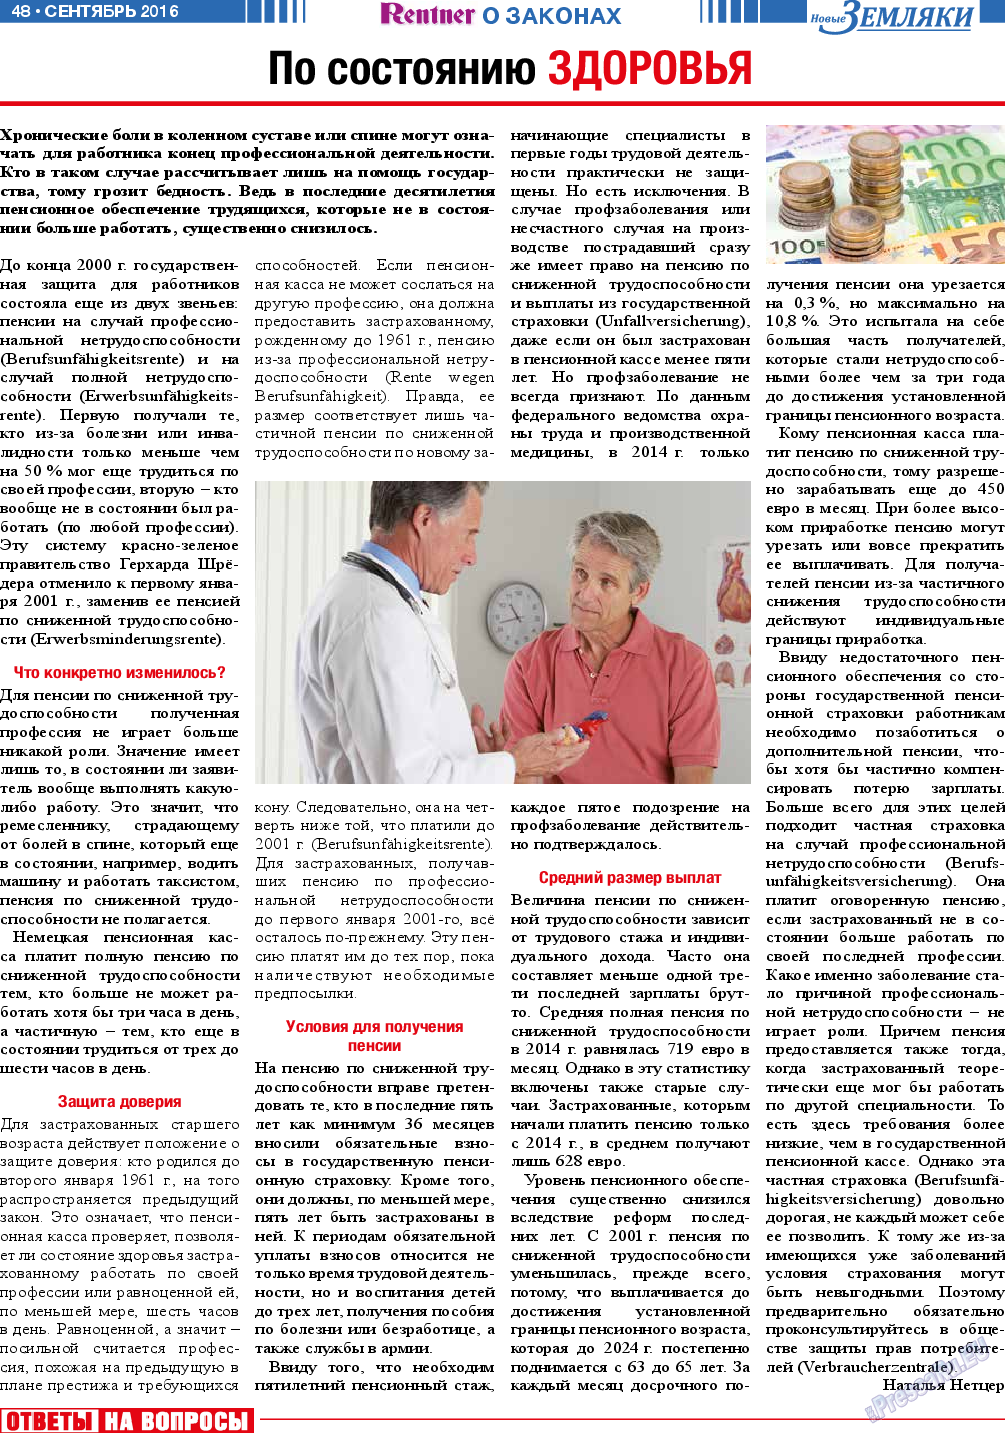 Новые Земляки, газета. 2016 №9 стр.48